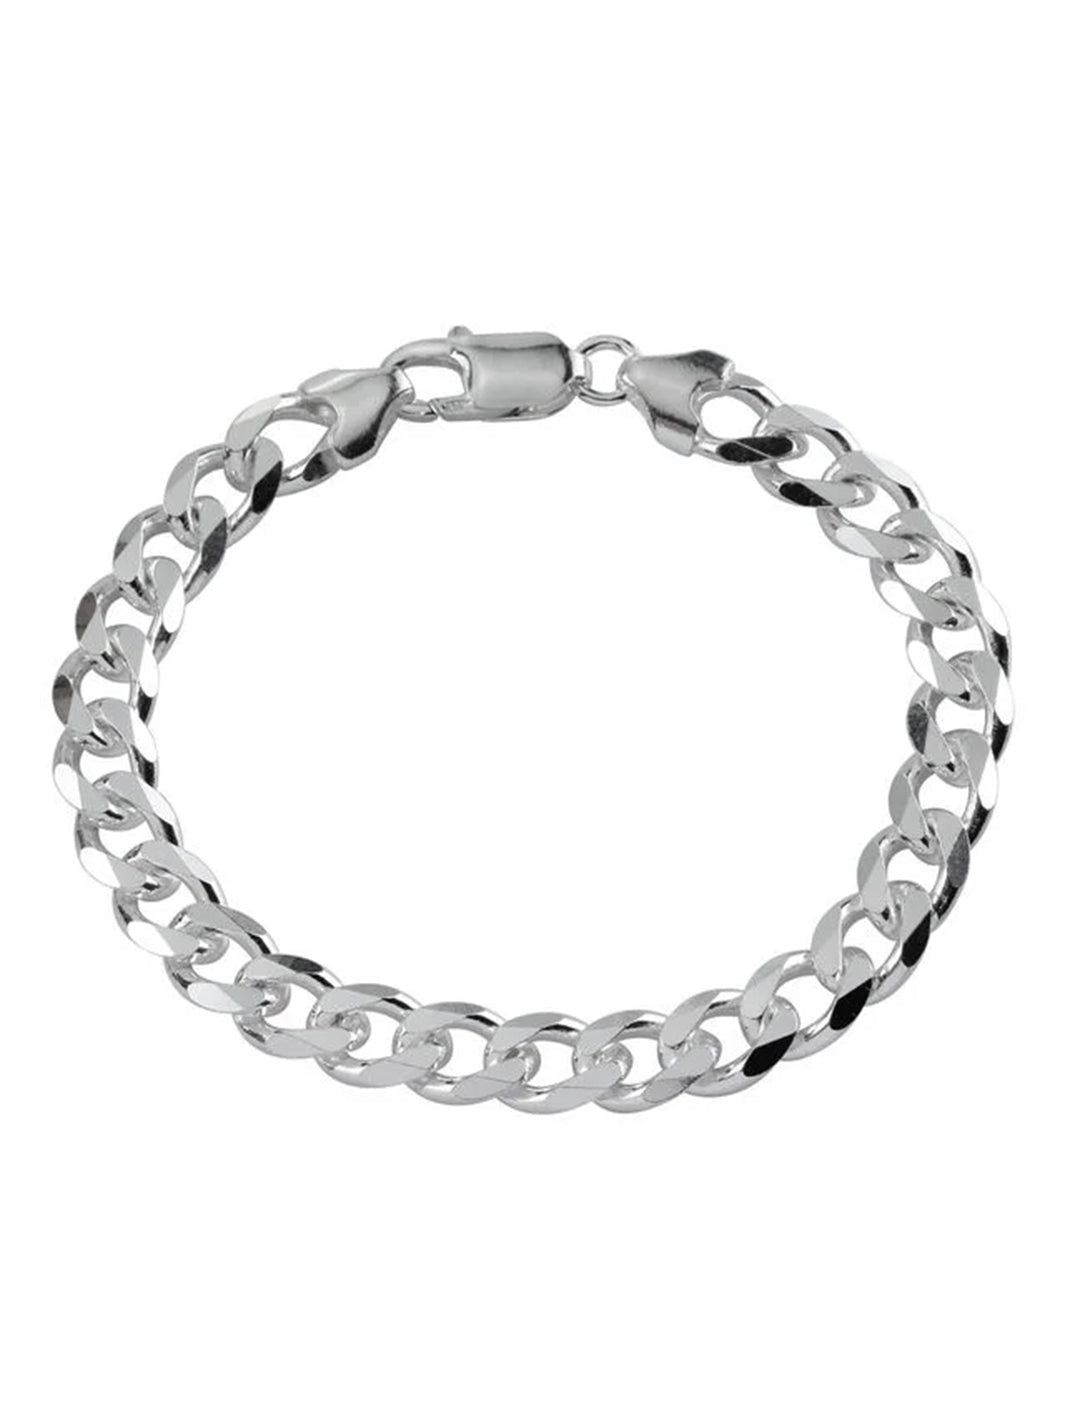 Silver Curb Mens Bracelet - Roop Darshan